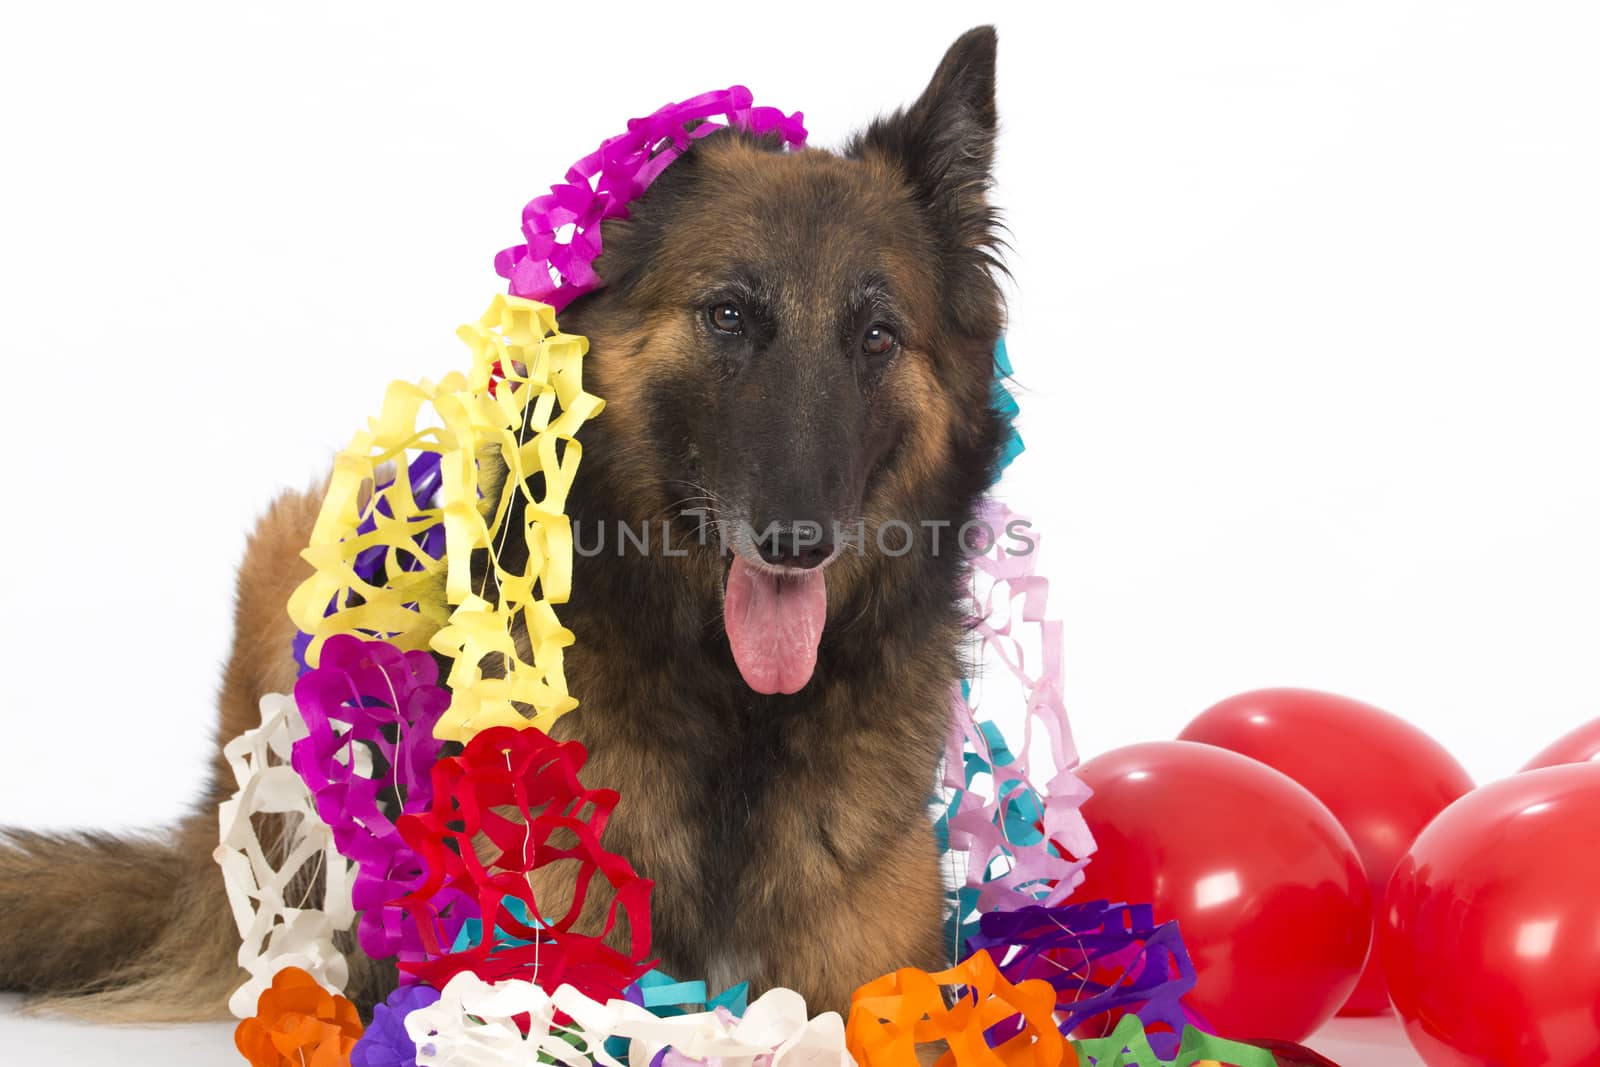 Belgian Shepherd Tervuren dog with balloons and garlands, isolat by avanheertum